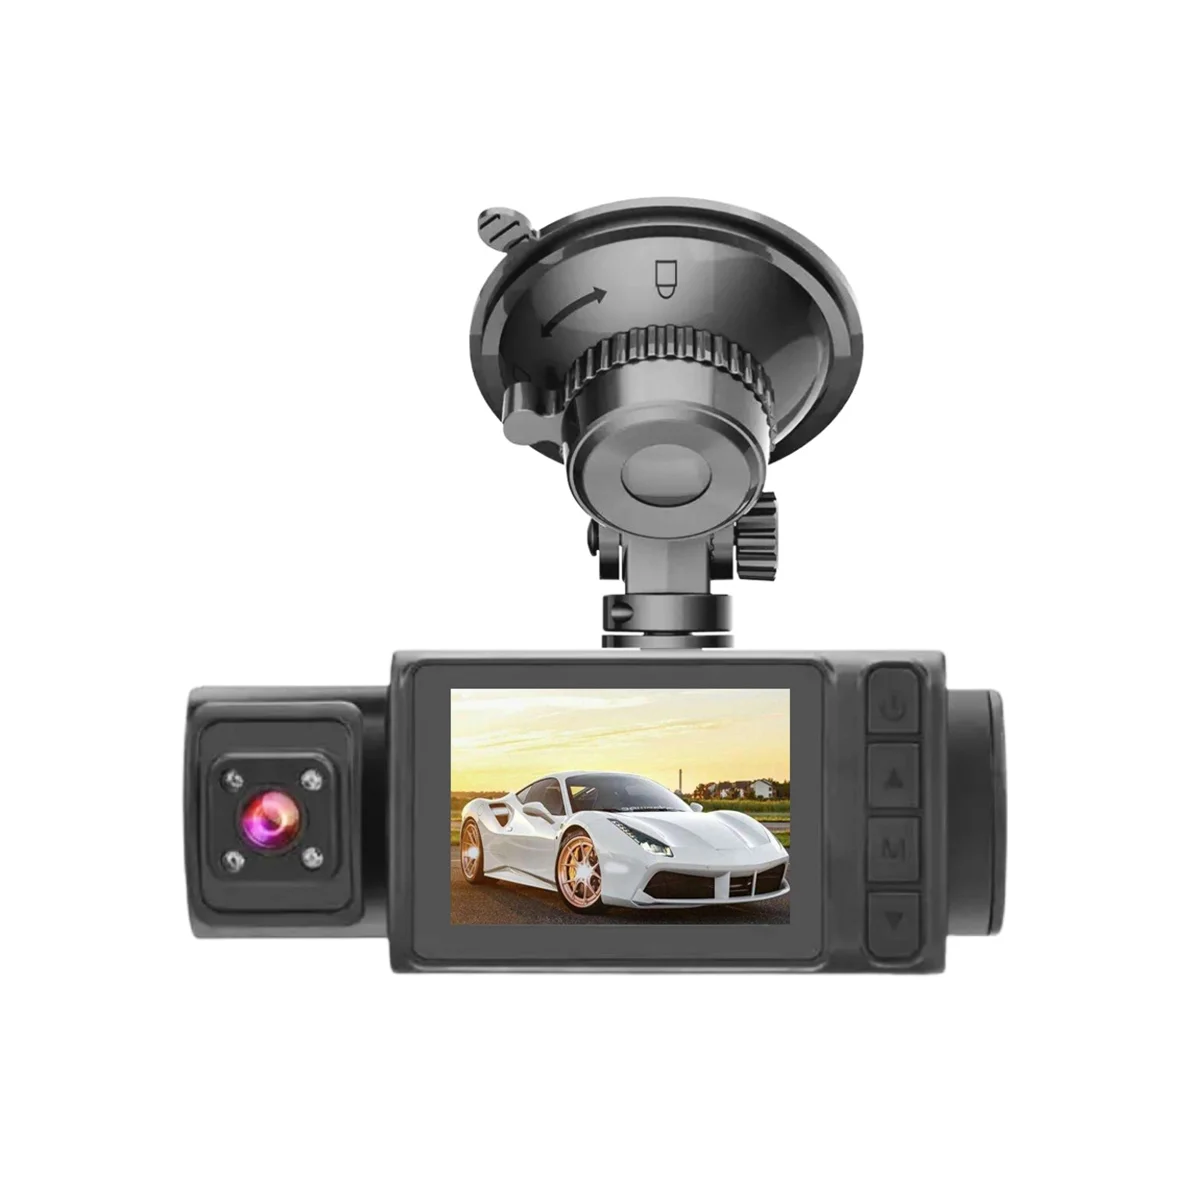 2Inch 1080P Scren automobilio kamera DVR automobilio prietaisų skydelis priekinė ir galinė kamera su vidine kamera 24 valandų stovėjimo aikštelė Montior